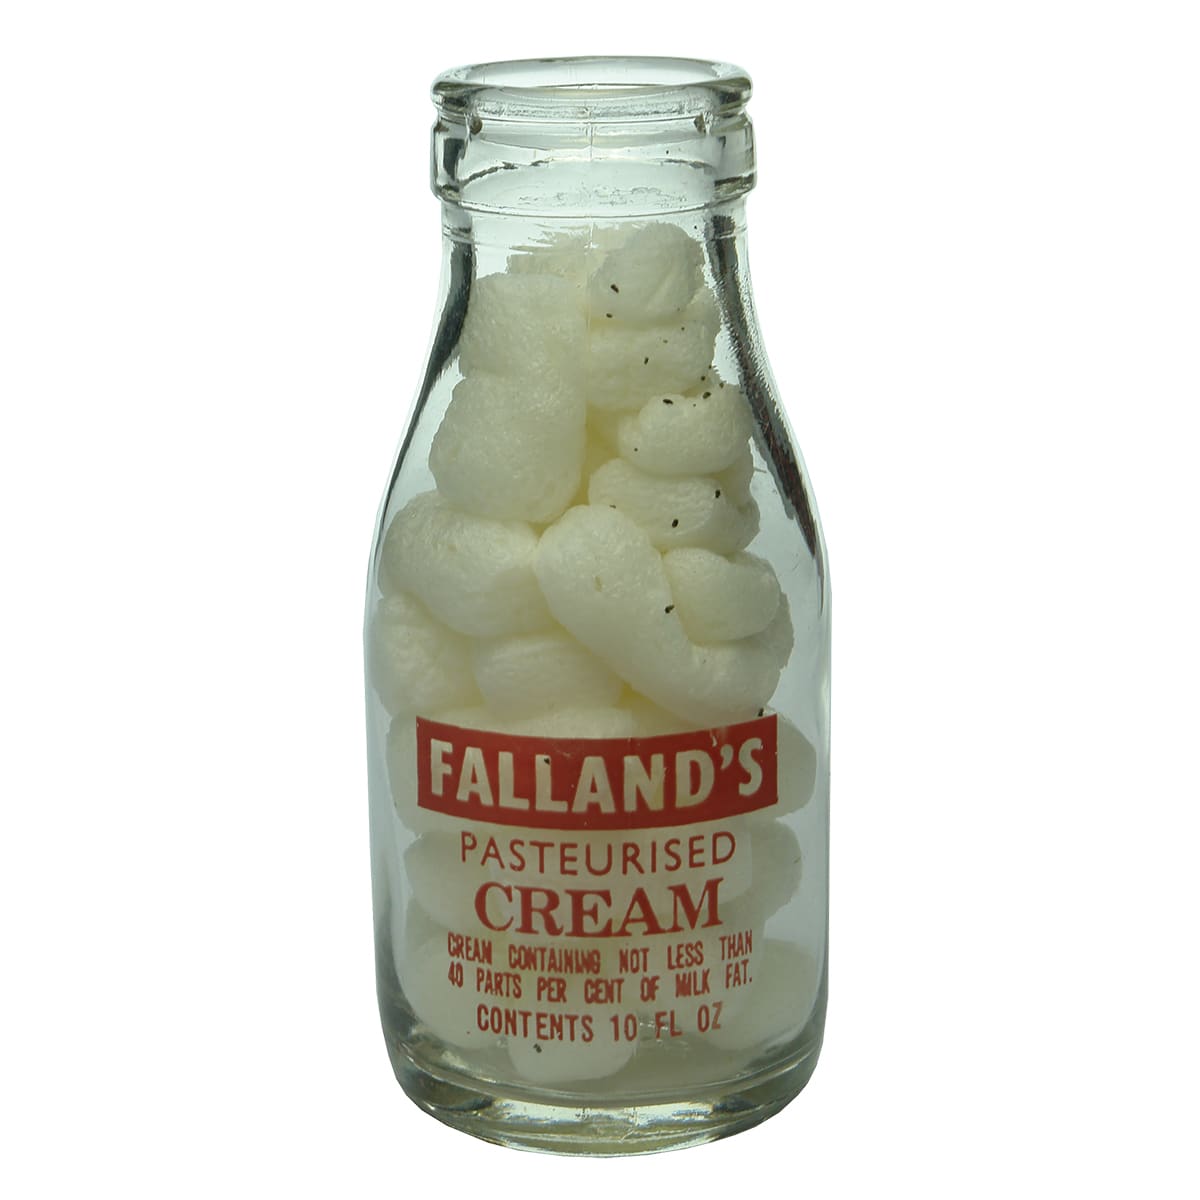 Milk. Falland's Pasteurised Cream, Renmark. Foil top. Ceramic label. 1/2 Pint.